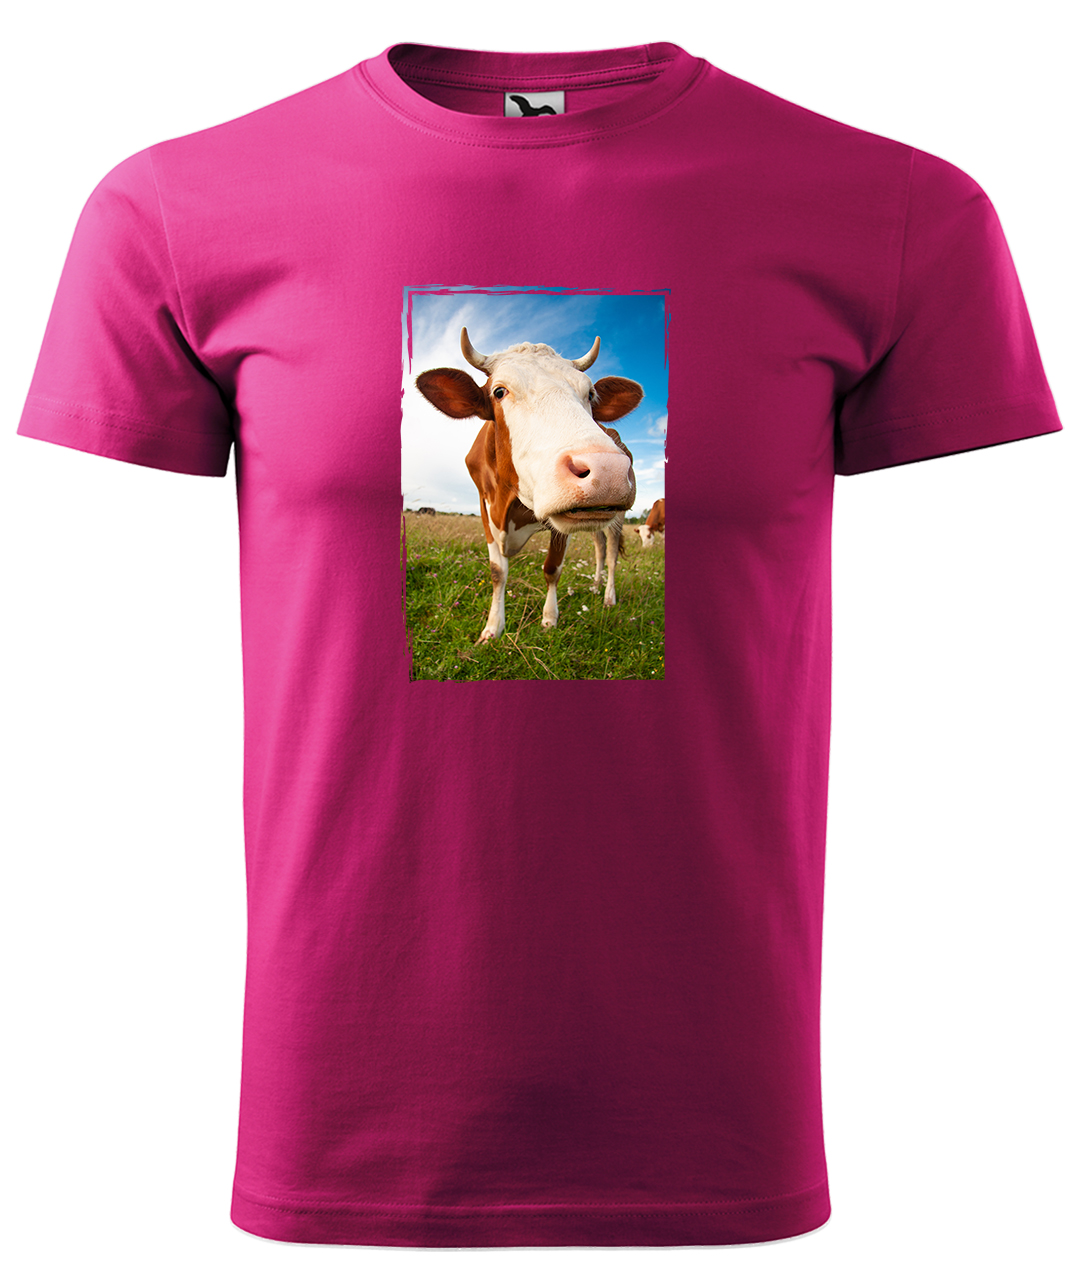 Dětské tričko s krávou - Na pastvě Velikost: 8 let / 134 cm, Barva: Malinová (63), Délka rukávu: Krátký rukáv